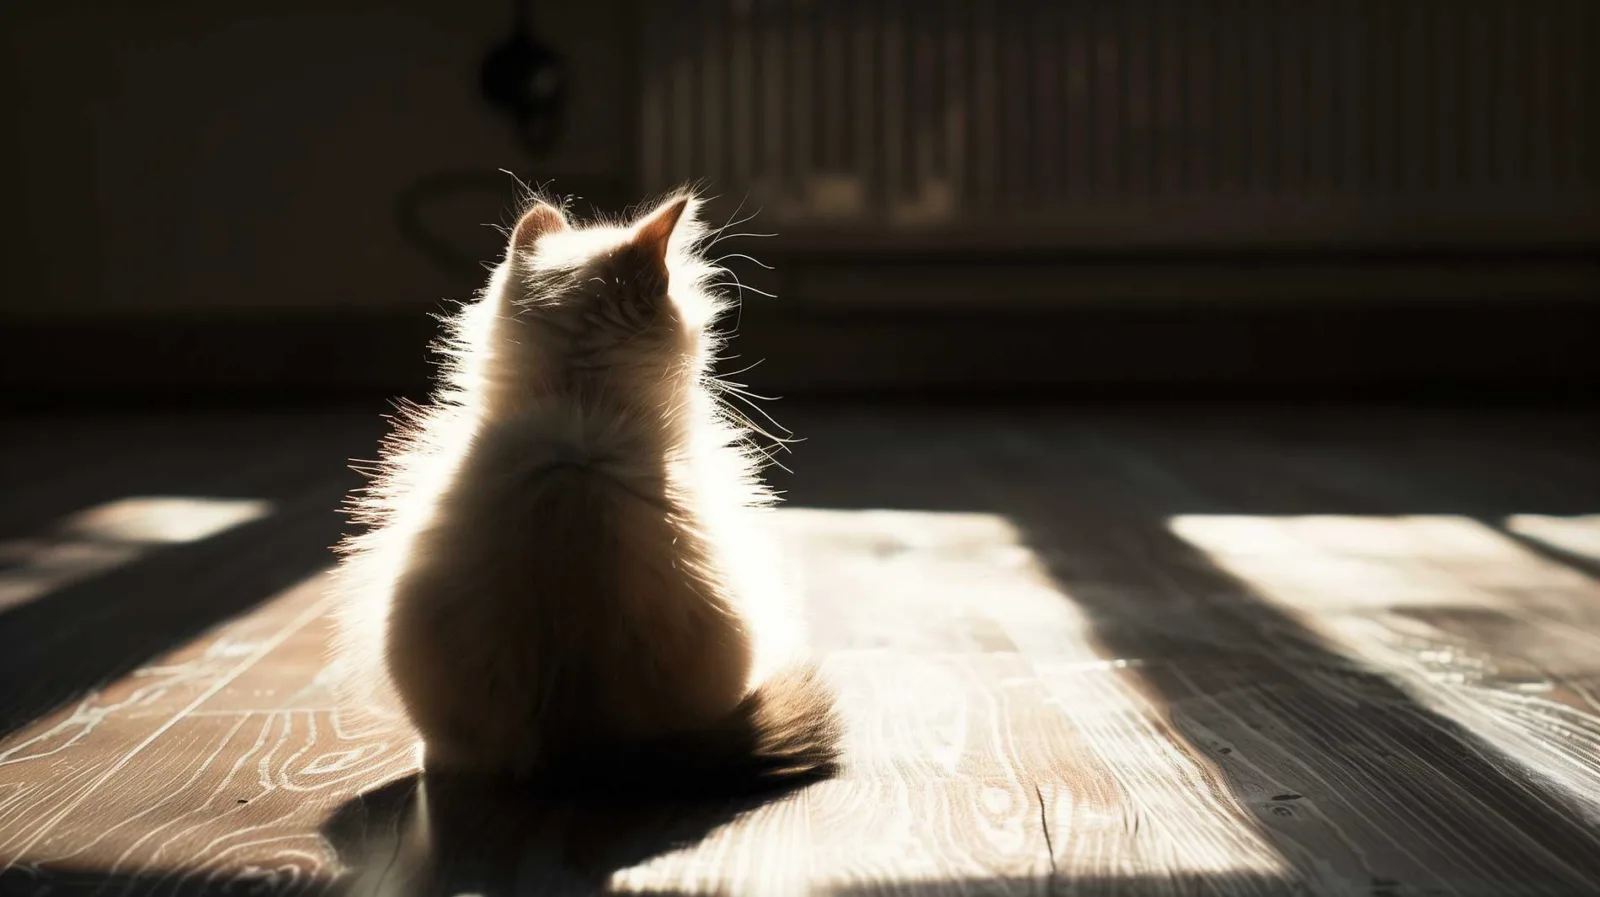 Eine Silhouette eines flauschigen Kätzchens, das auf einem Hartholzboden sitzt und von hellem Sonnenlicht, das durch ein Fenster fällt, angestrahlt wird. Das Licht umreißt das Fell der Katze und hebt ihren Flaum und ihre Schnurrhaare hervor. Die Katze blickt vom Betrachter weg in Richtung Fenster und wirft einen langen Schatten auf den Holzboden, der die Maserung des Holzes erkennen lässt.